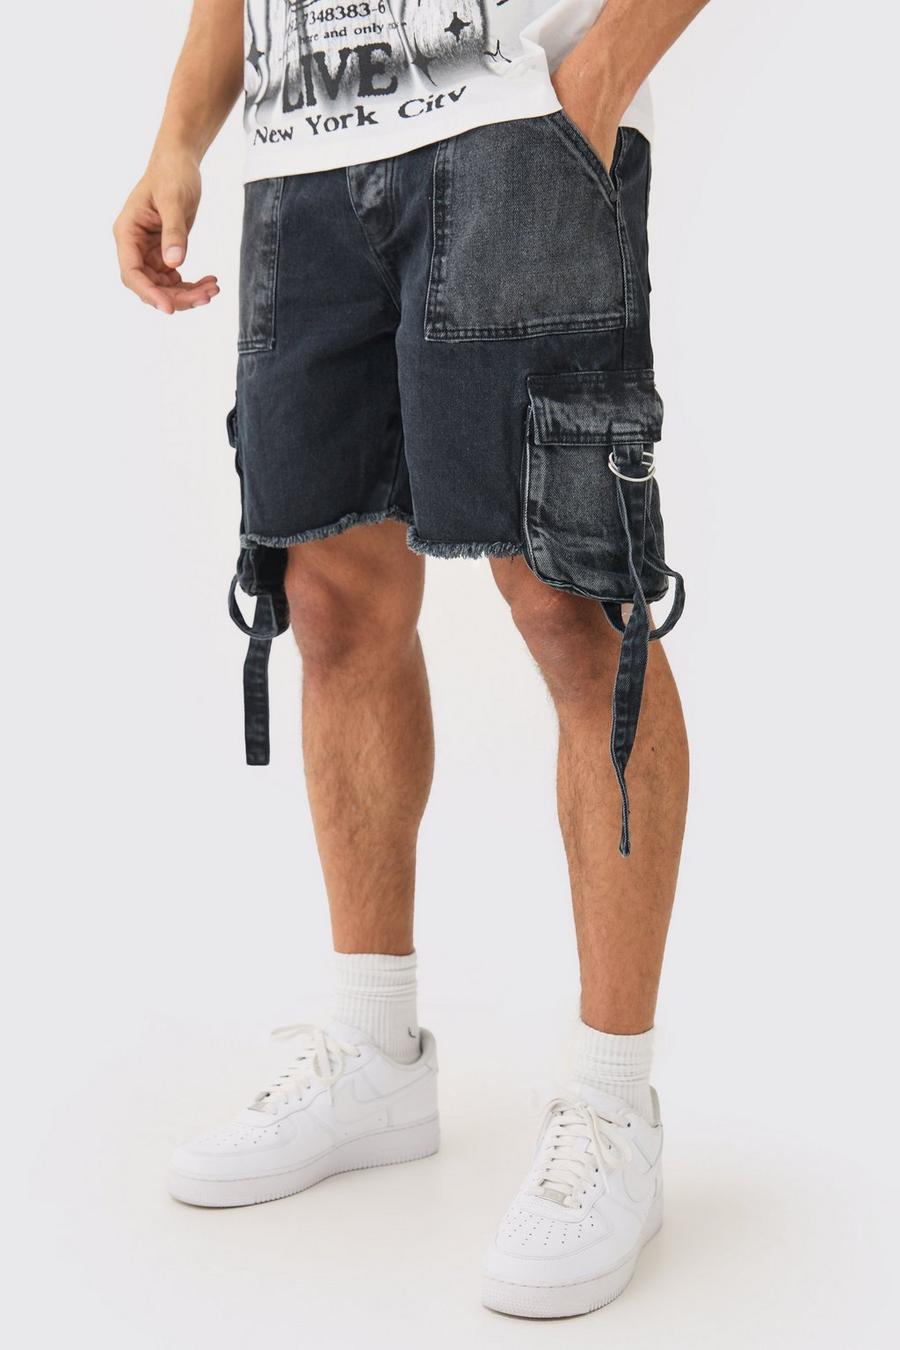 Lockere Jeansshorts mit Cargo-Taschen in Schwarz, Washed black